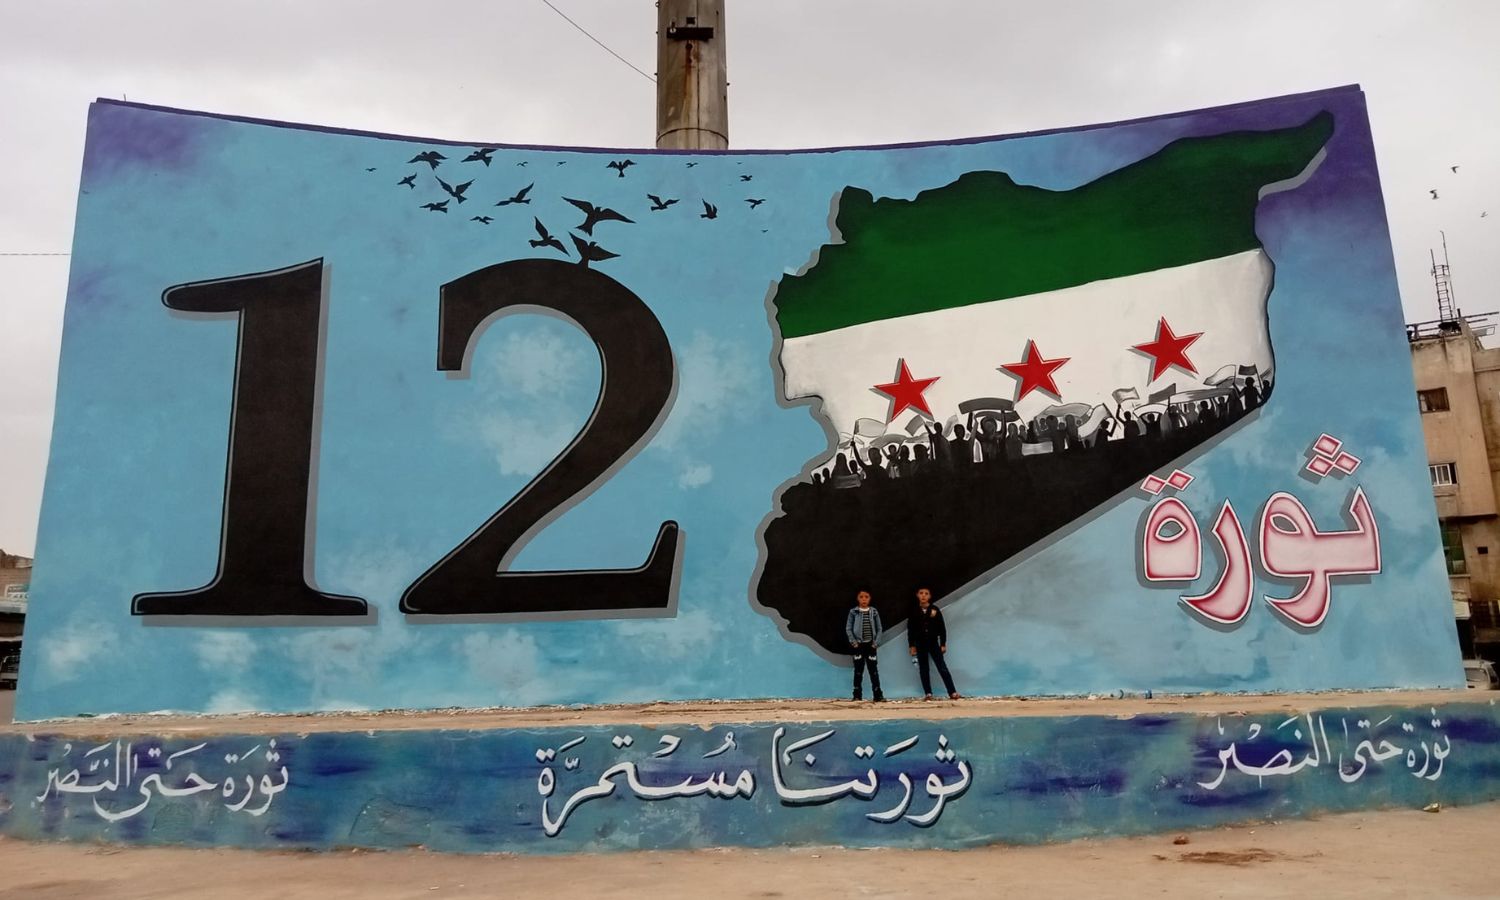 رسمة جدارية لفريق "ريشة أمل" على دوار "المحراب" في مدينة إدلب في الذكرى الـ12 للثورة السورية- 14 من آذار 2023 (Nouri Al-rawwal/ فيس بوك)